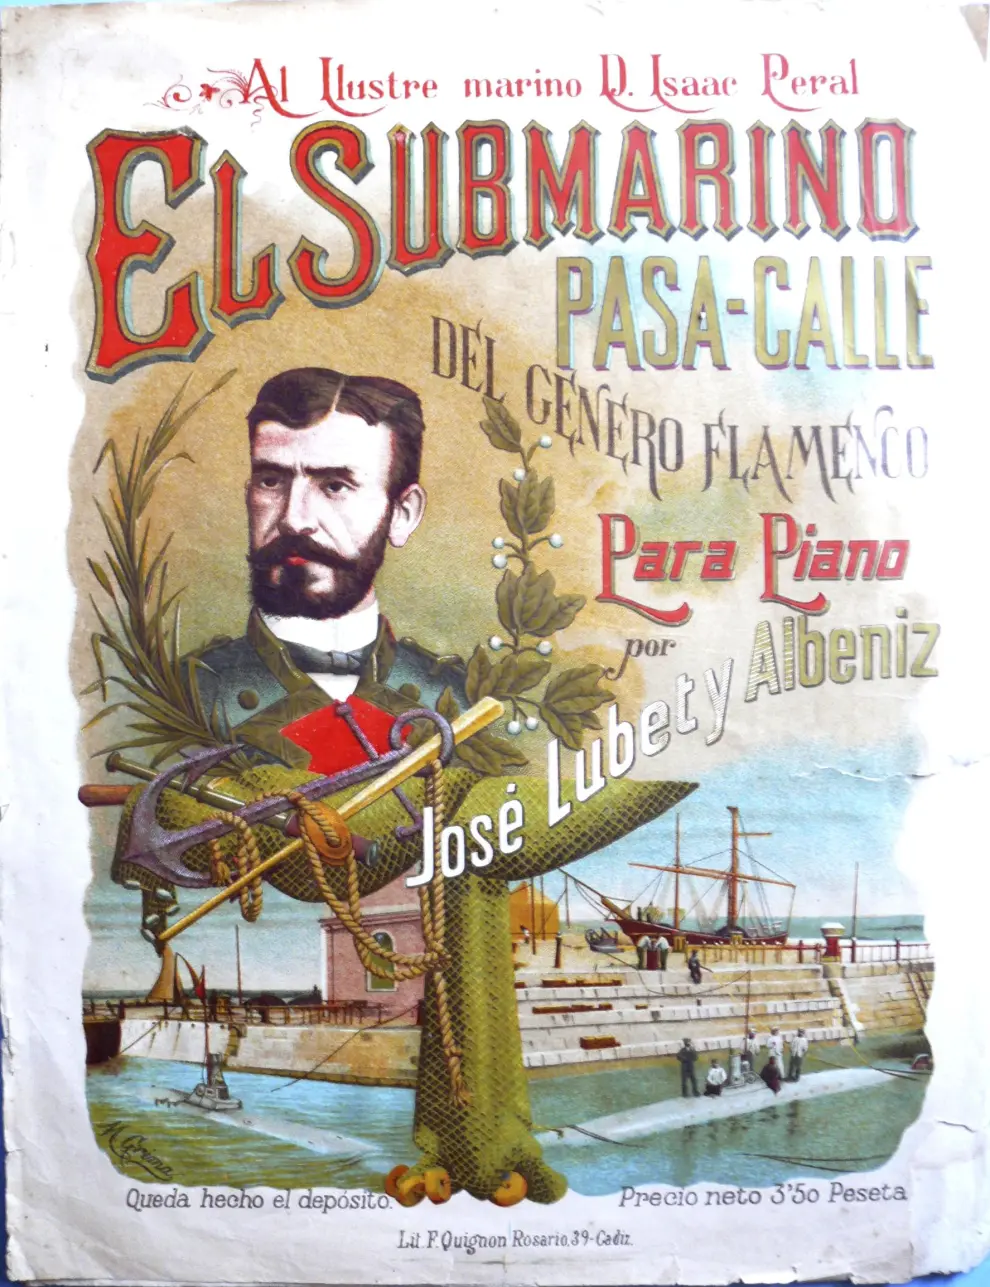 Partitura de Jose Lubet y Albeniz de una pasacalles en el homenaje al submarino de Peral.